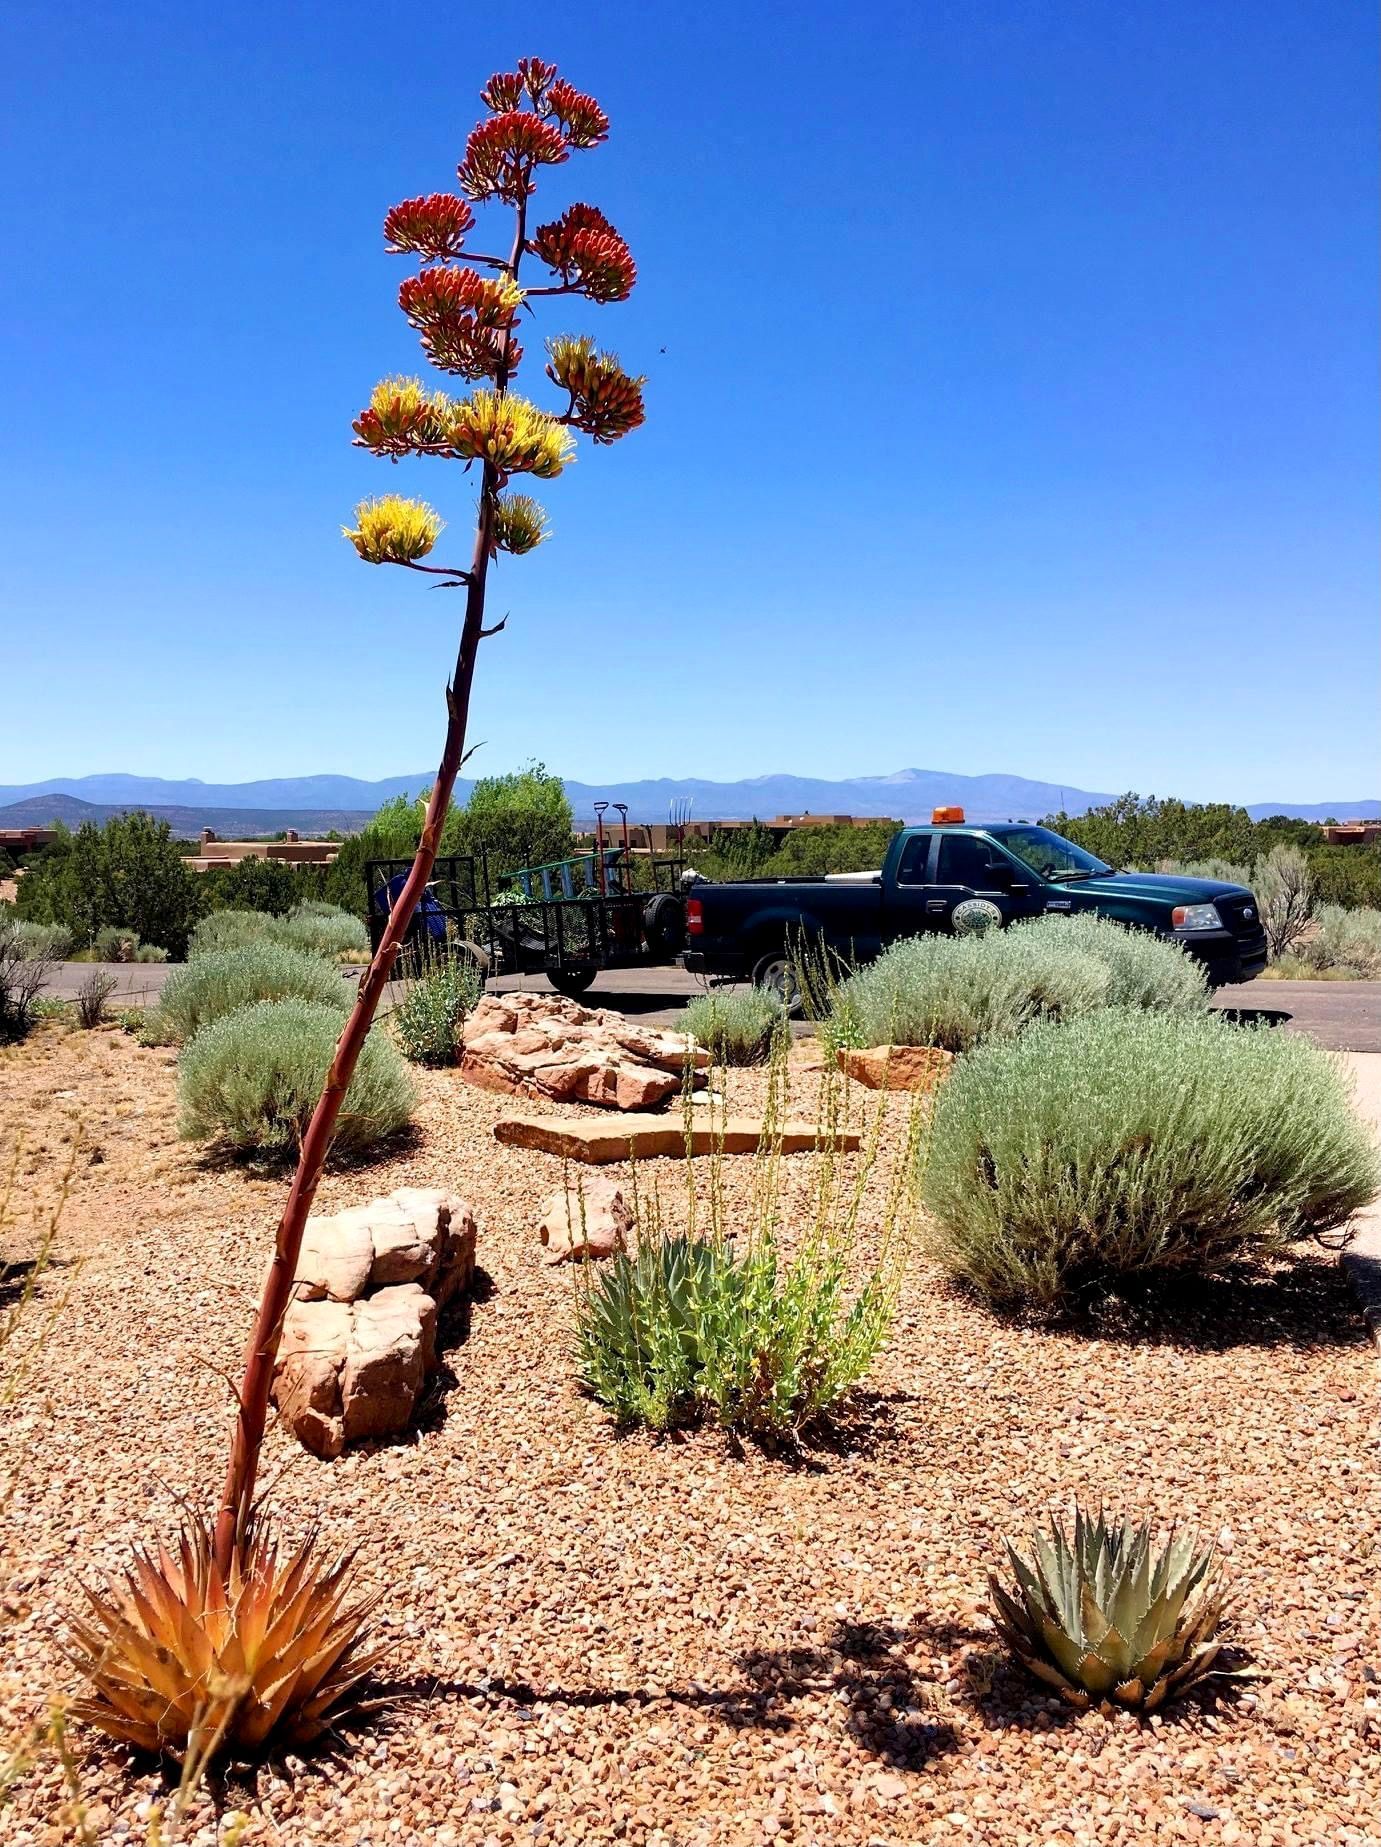 Landscape of Garden — Lawn Maintenance in Santa Fe, NM